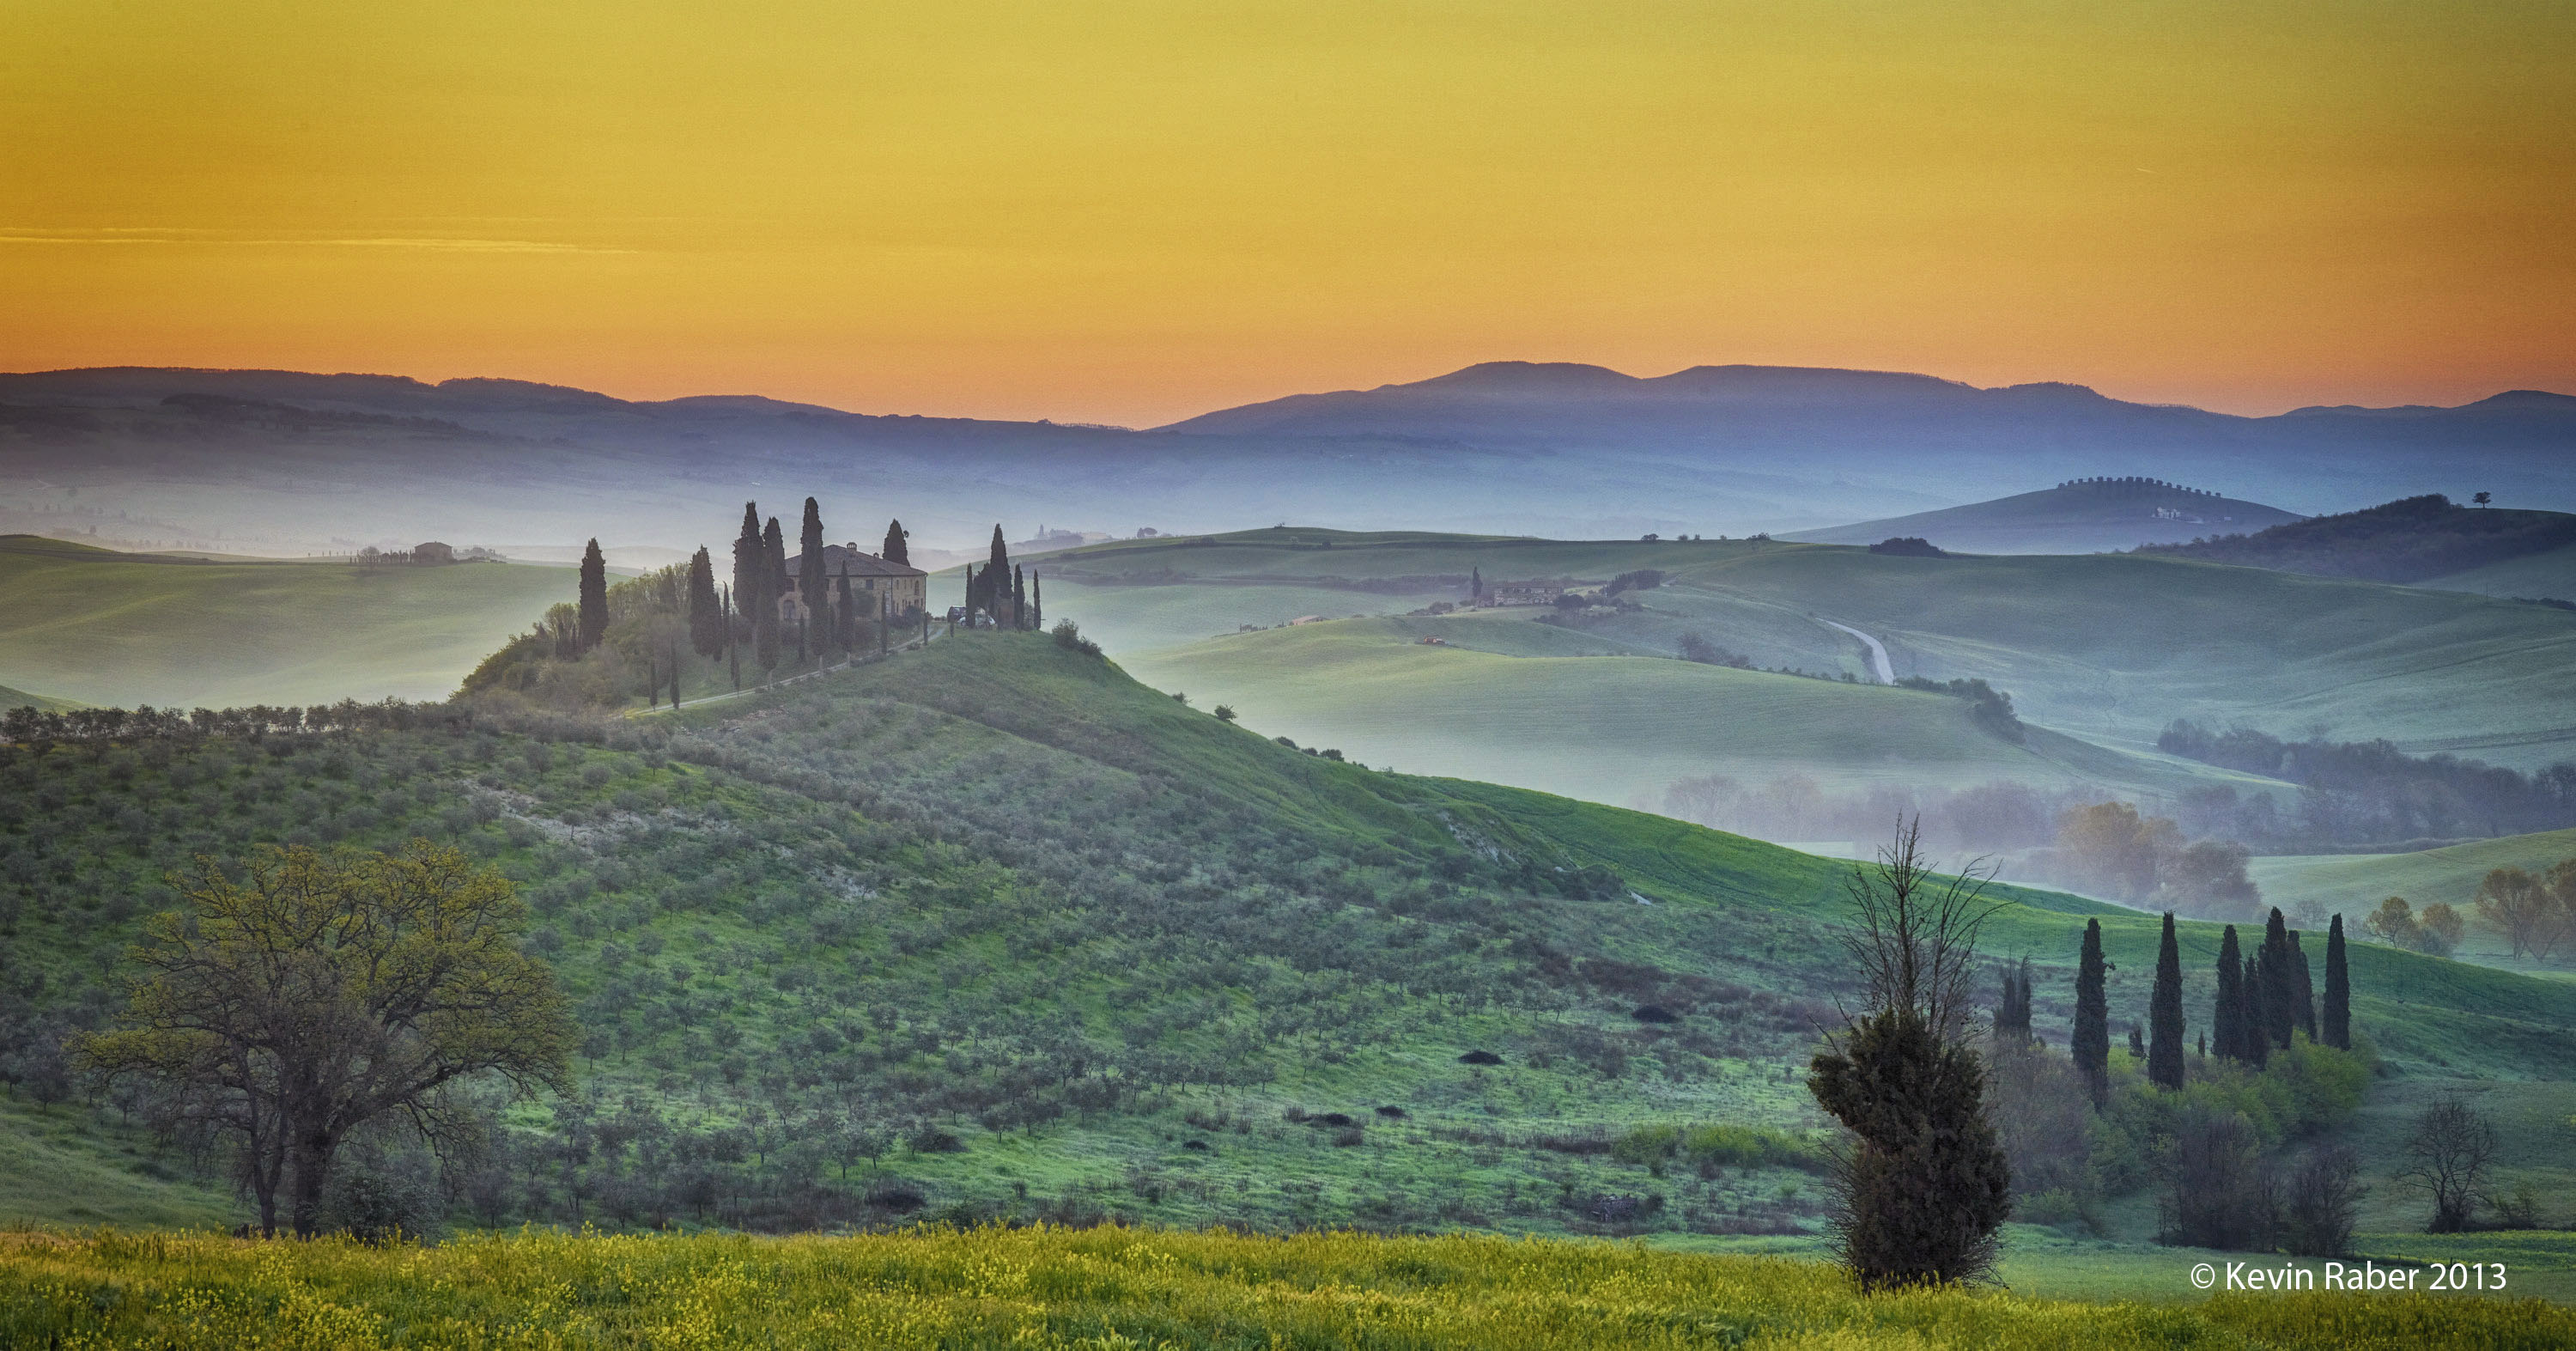 Tuscany, Italy - Sunrise